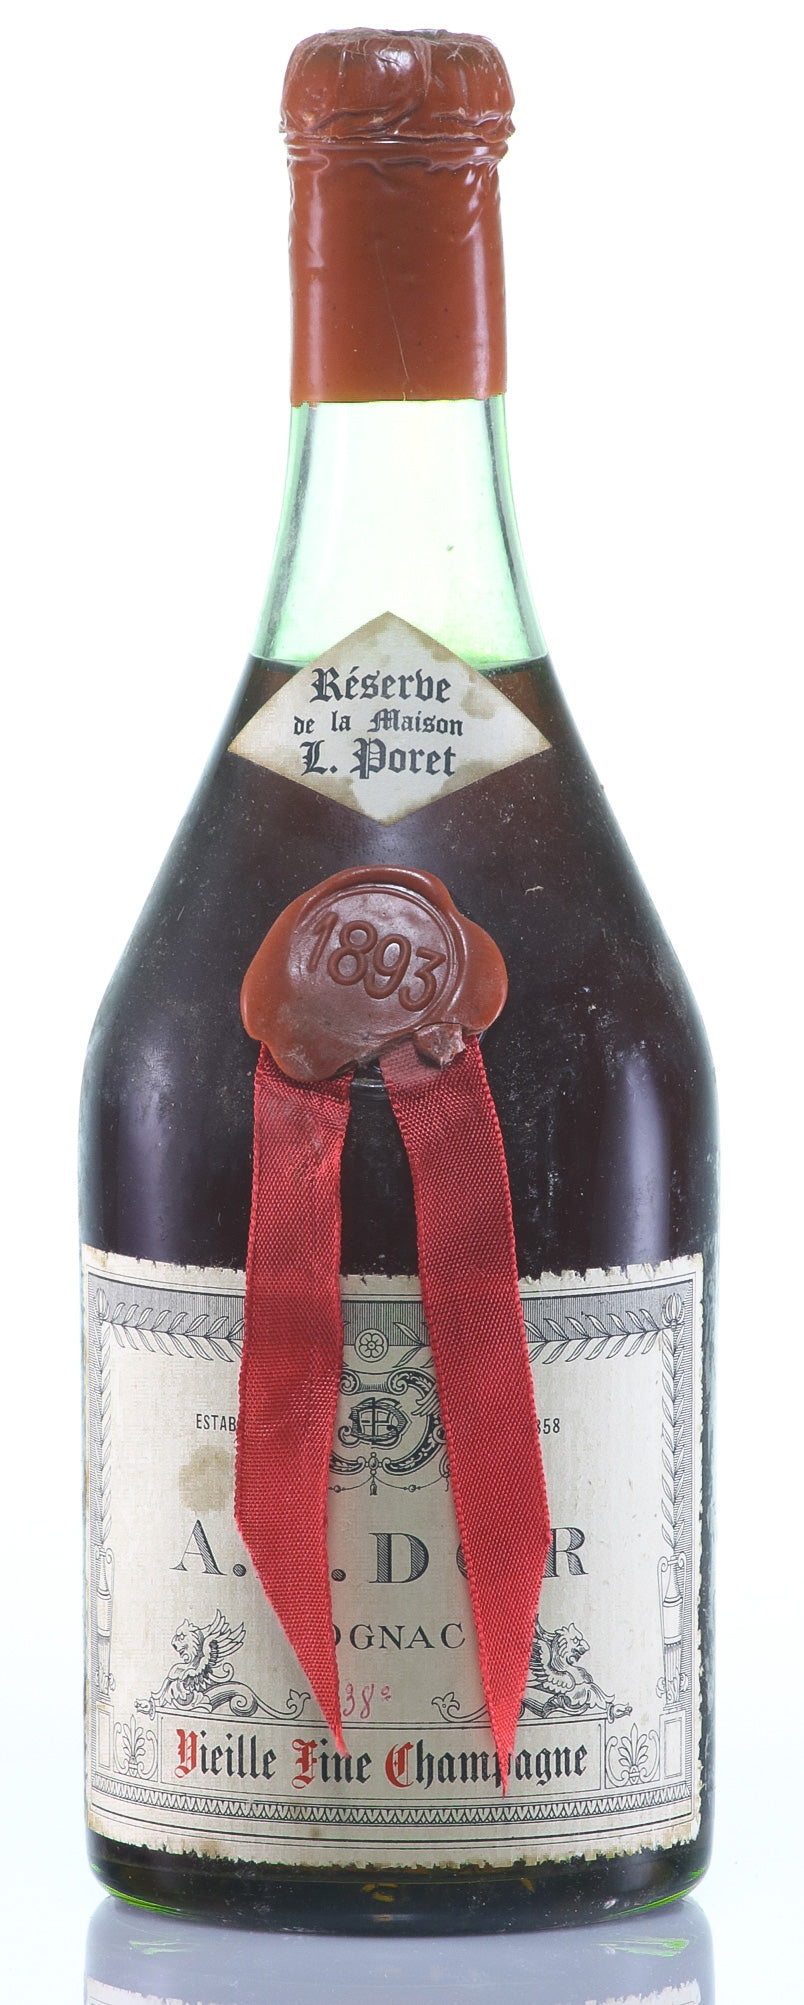 AE Dor No.1 Cognac 1893 Réserve de la Maison L. Poret Vieille Fine Champagne Age d'Or Waxbutton Vintage - Rue Pinard